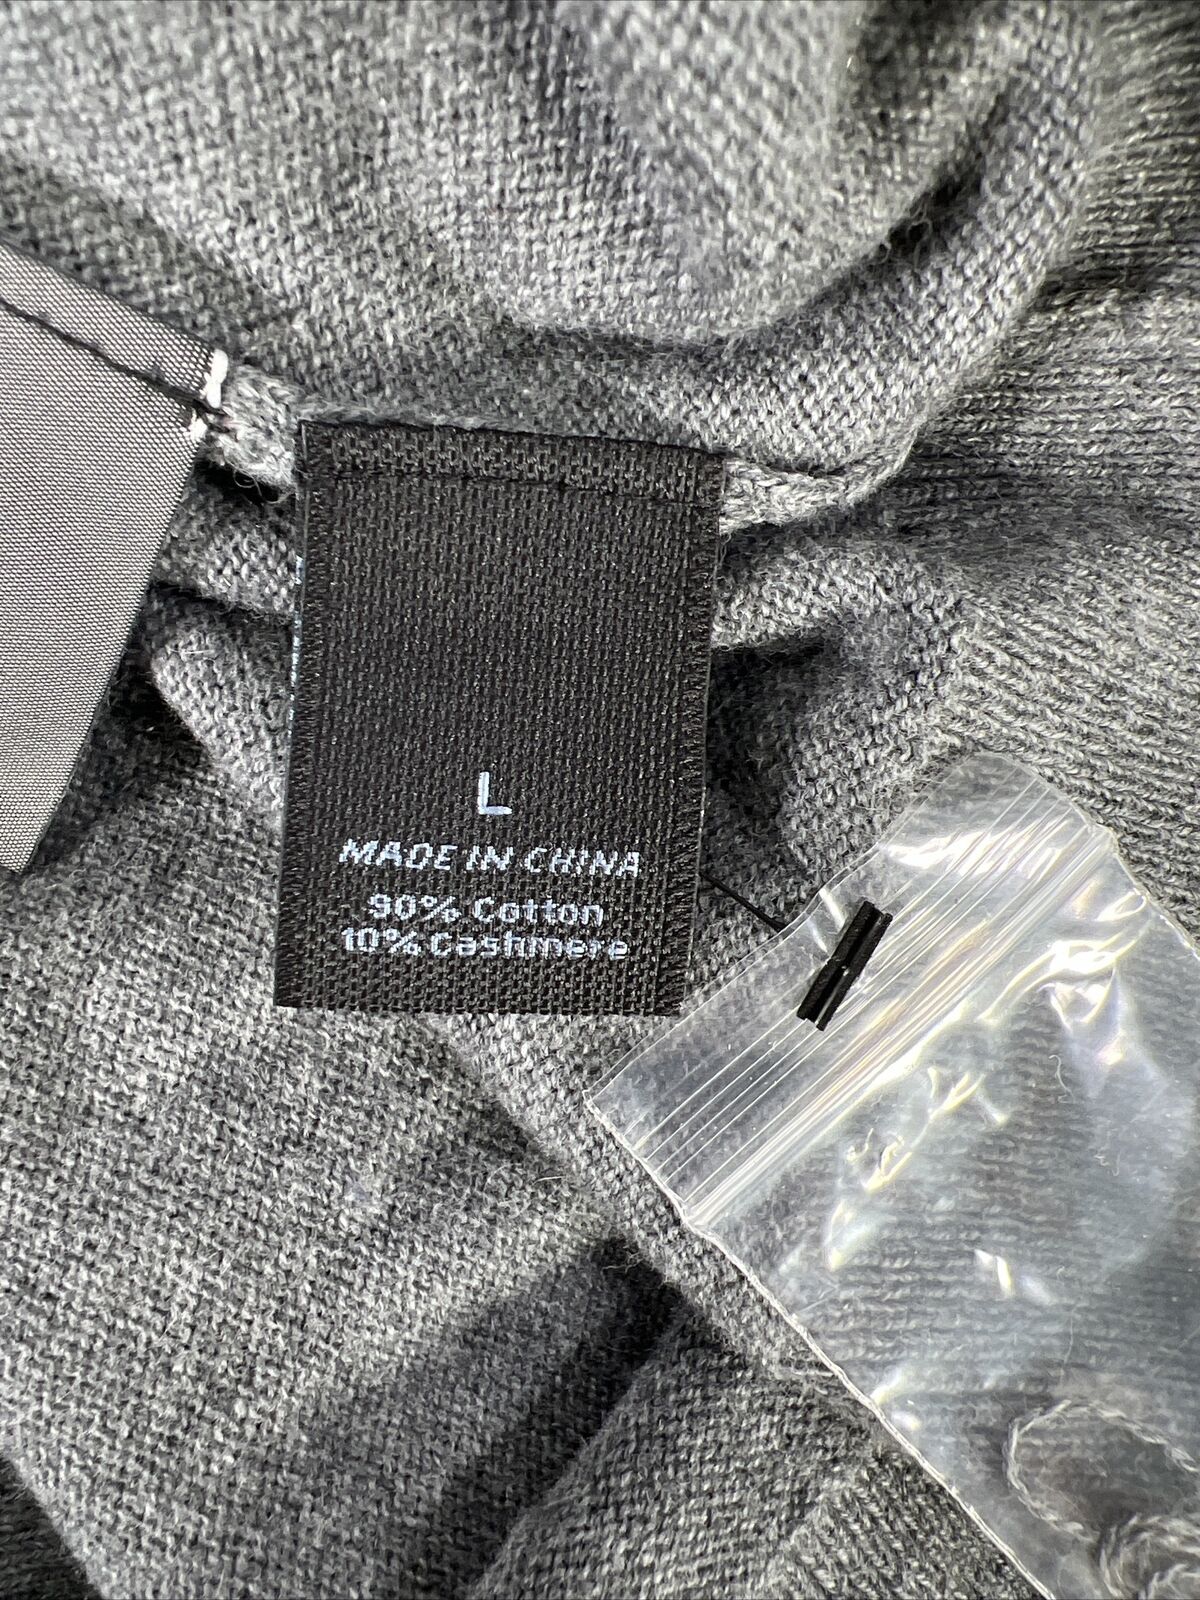 NUEVO Suéter gris de manga larga con cuello en V de Marc Anthony para hombre - L